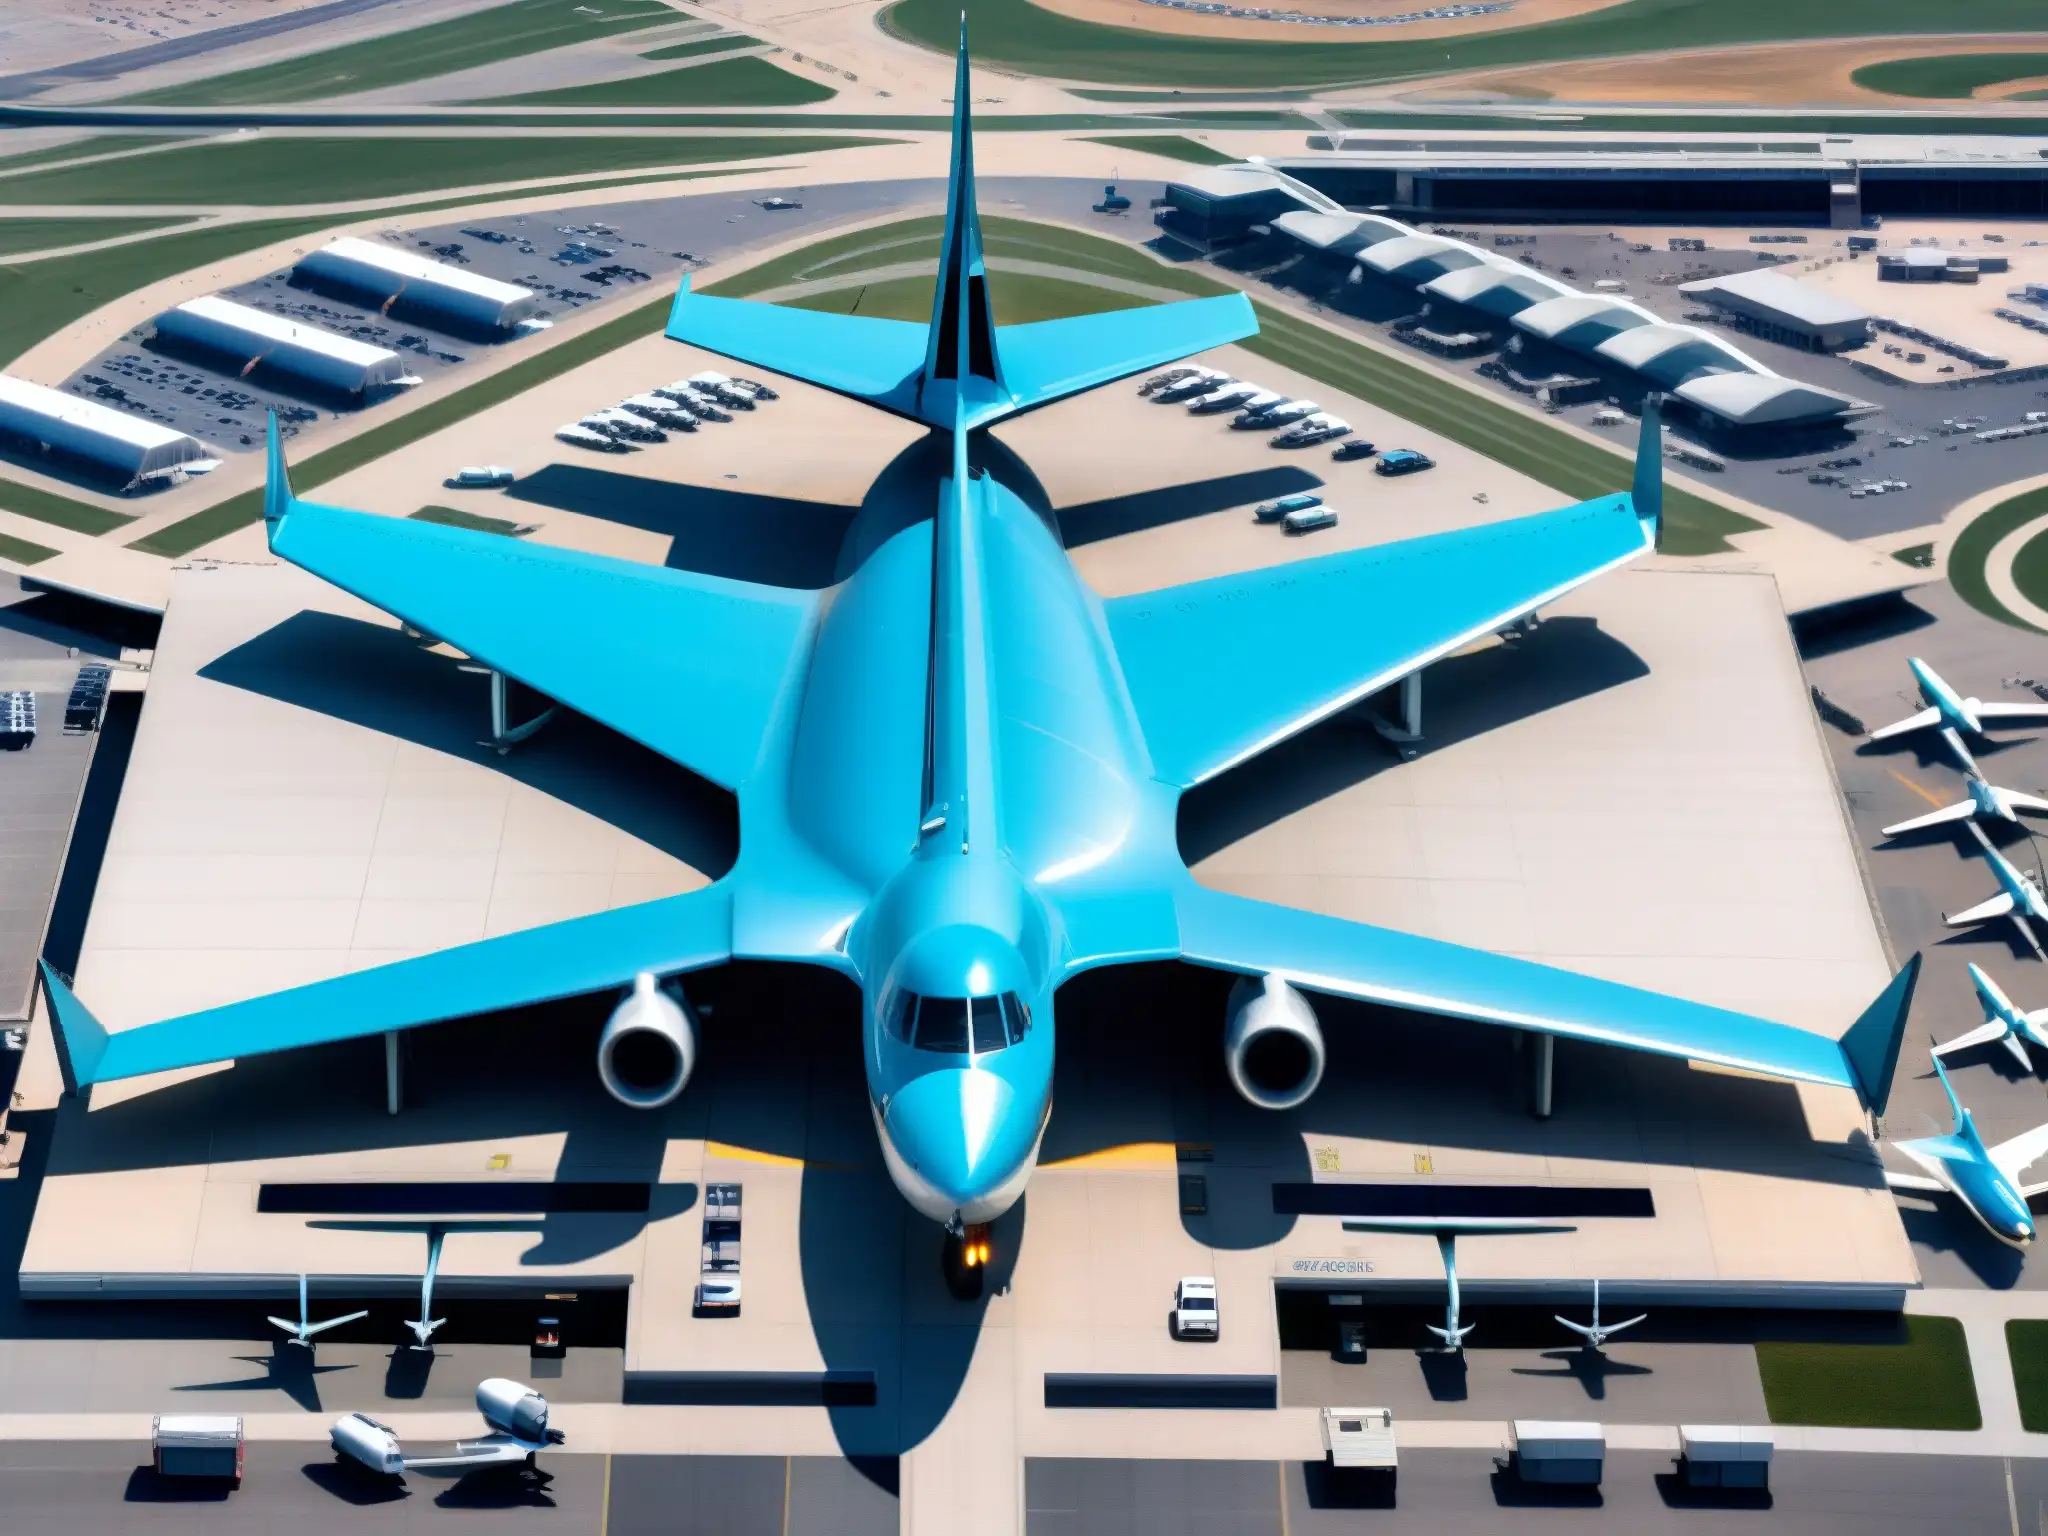 Imagen aérea del aeropuerto internacional de Denver con la escultura del 'Blue Mustang' y la arquitectura única